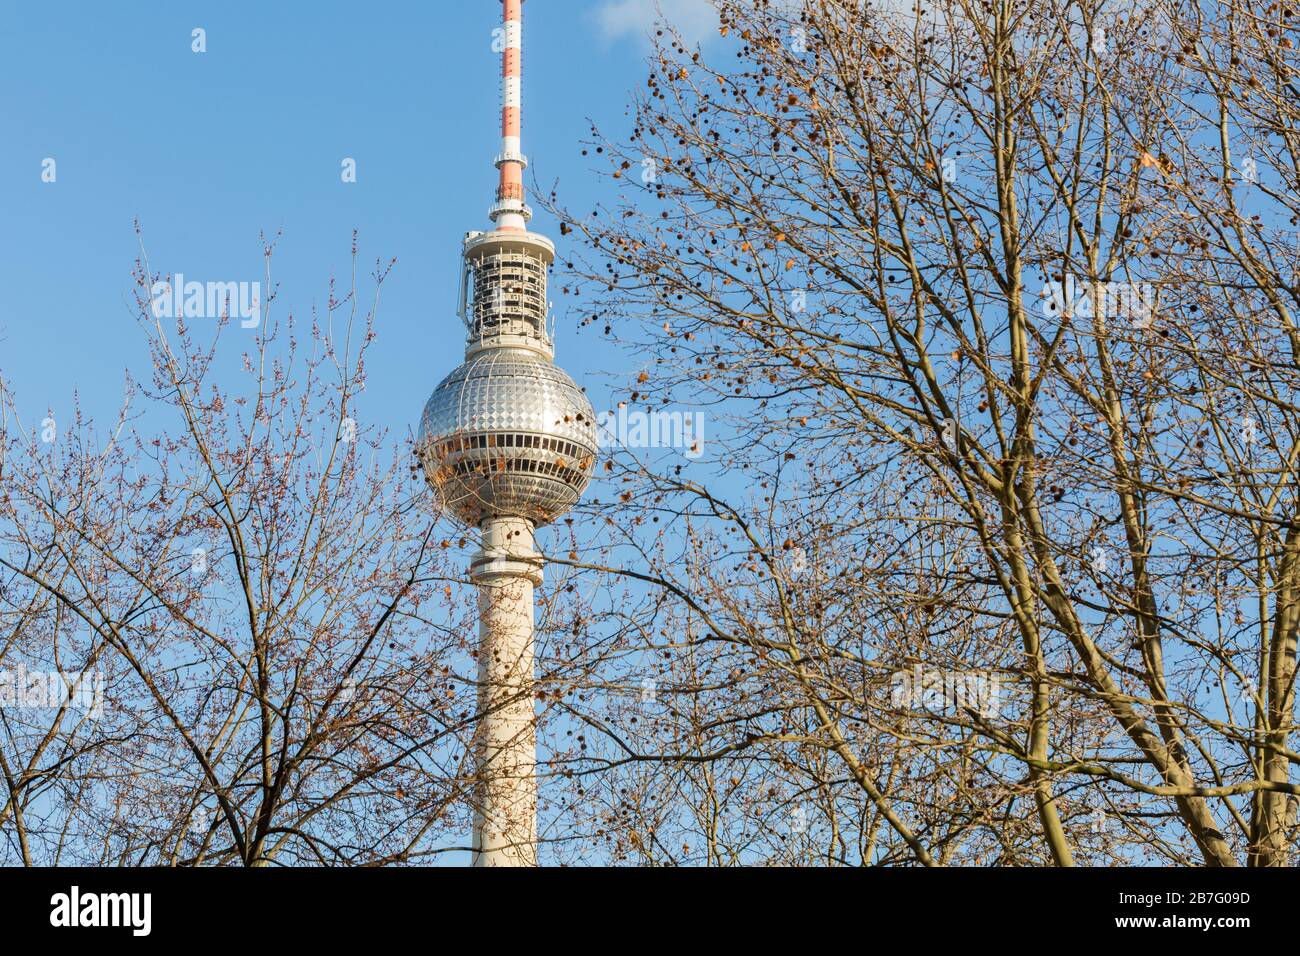 Berliner Fernsehturm (torre televisiva) dietro gli alberi. Simbolo della capitale tedesca, con ristorante girevole e sfera iconica. Punto di riferimento. Foto Stock